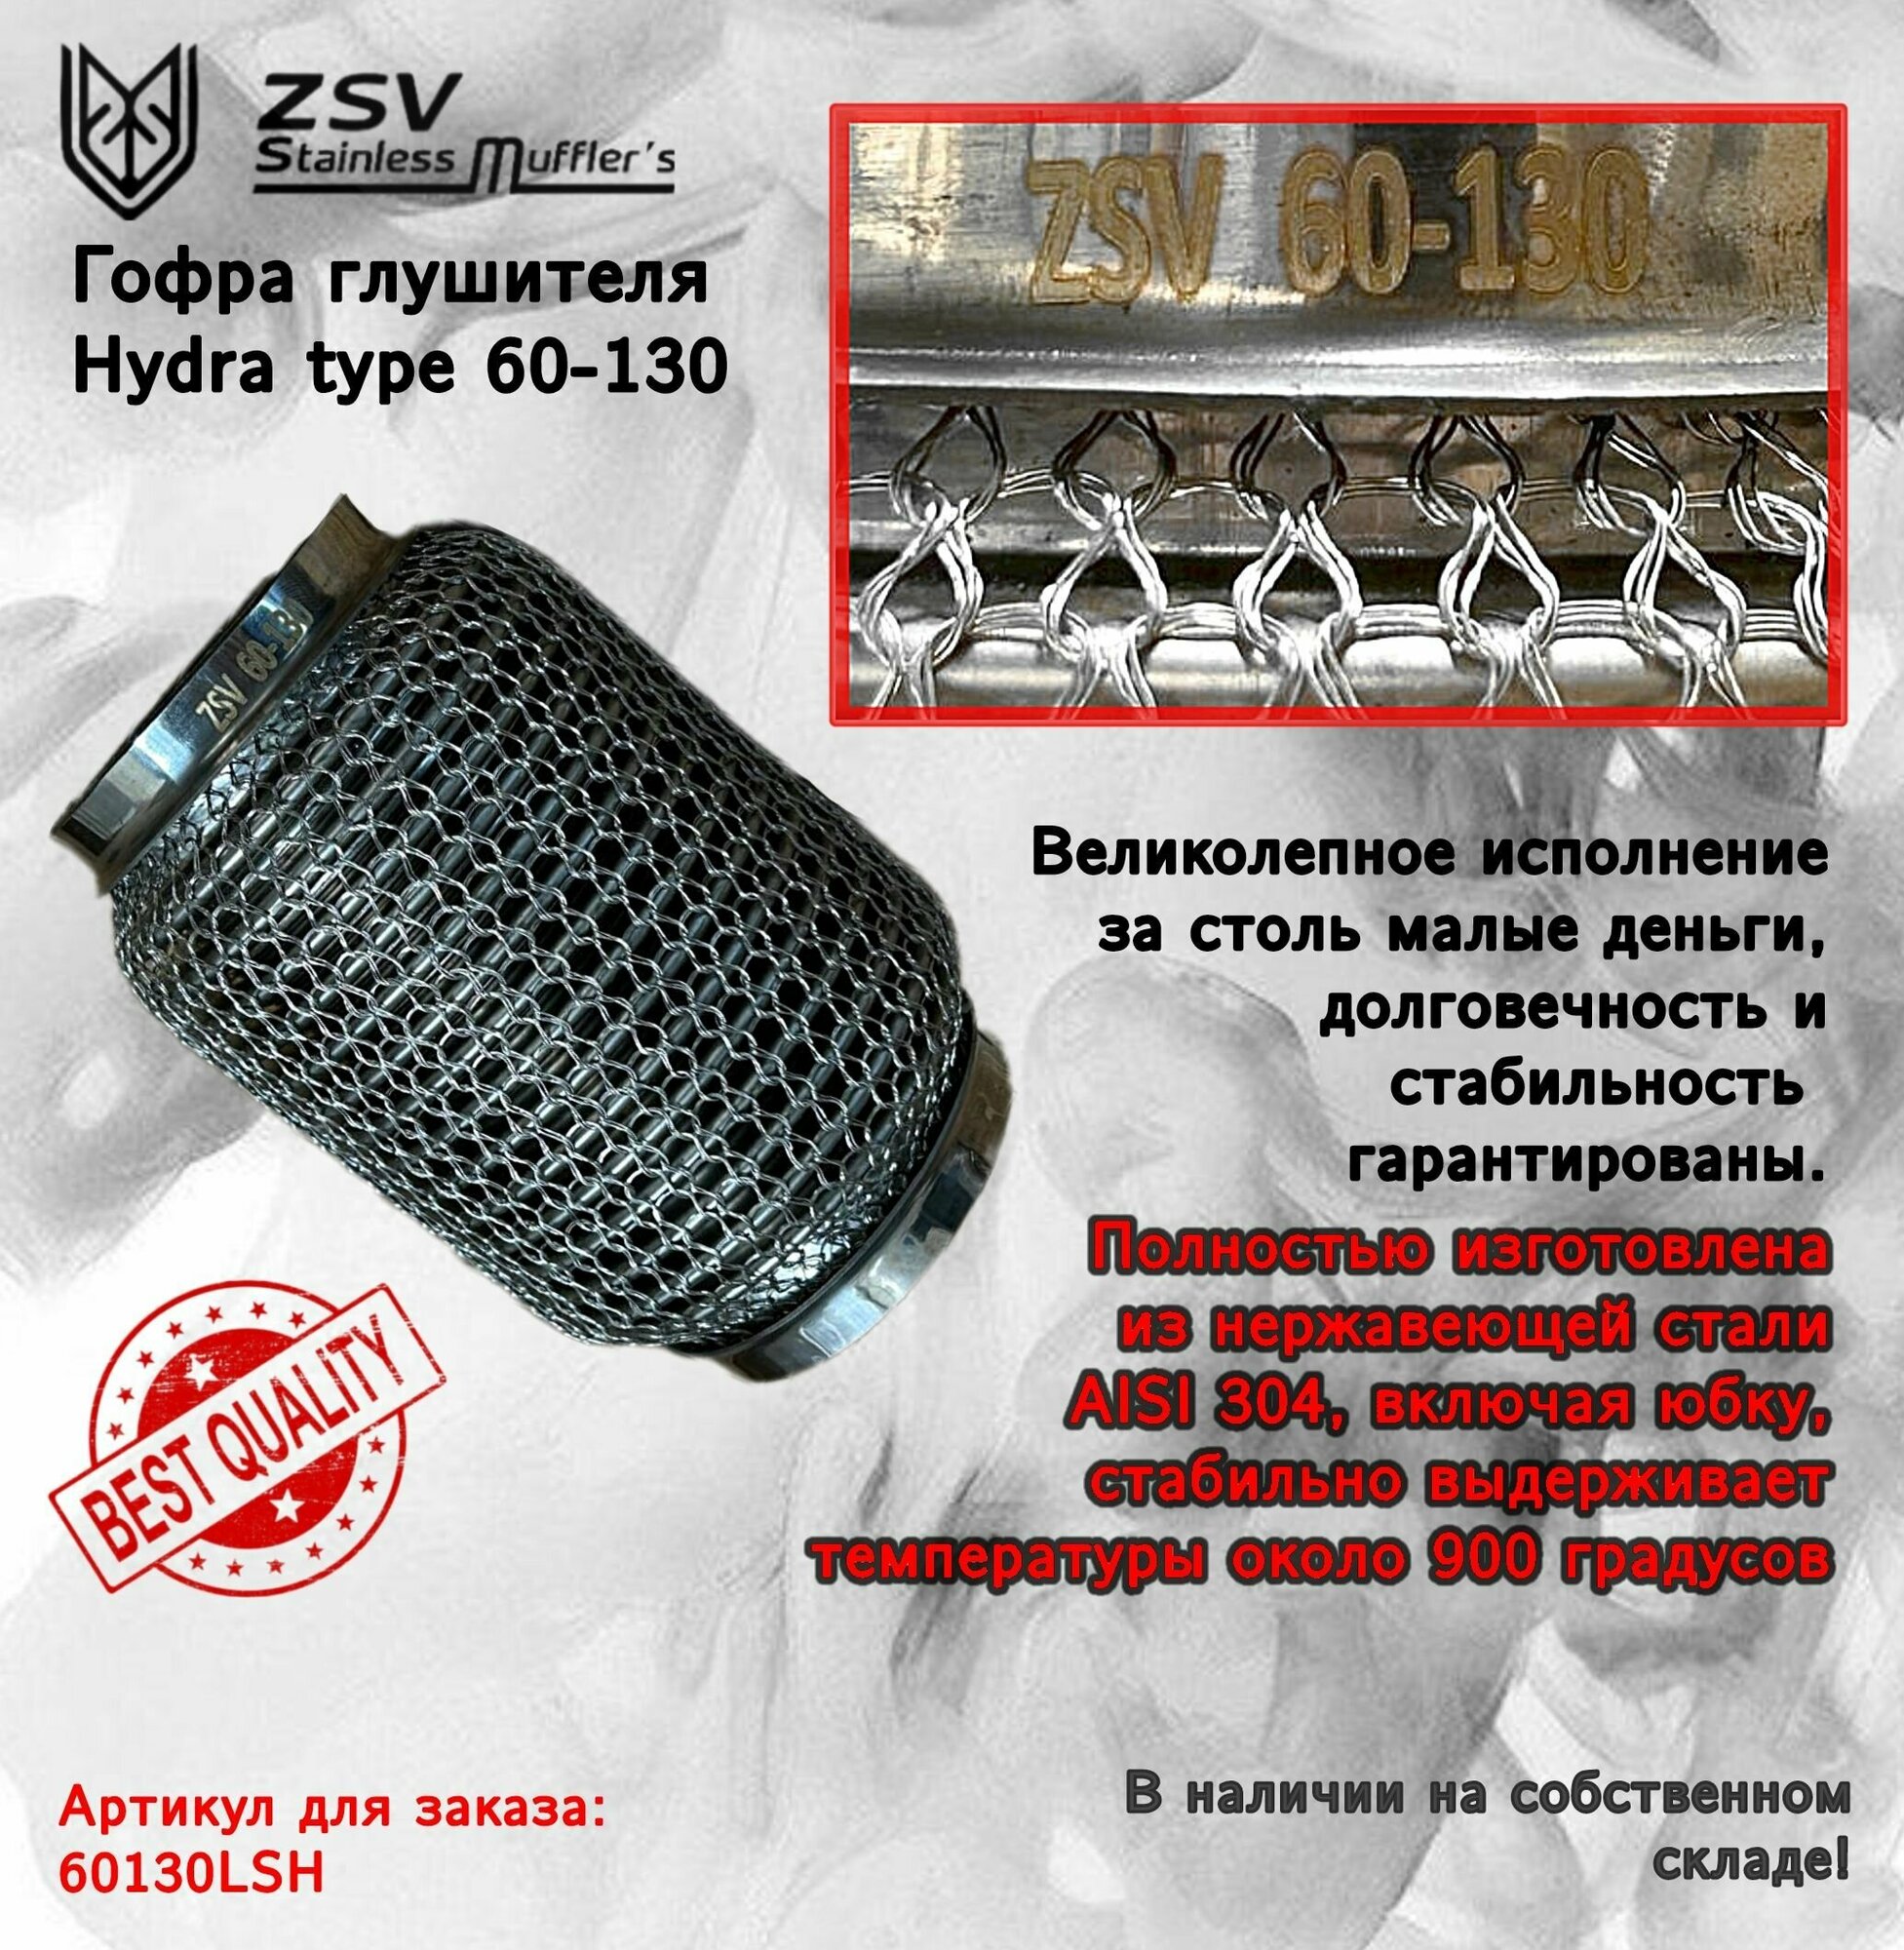 Гофра глушителя Hydra type 60-130 Улучшенная! полностью изготовлена из нержавеющей стали AISI 304